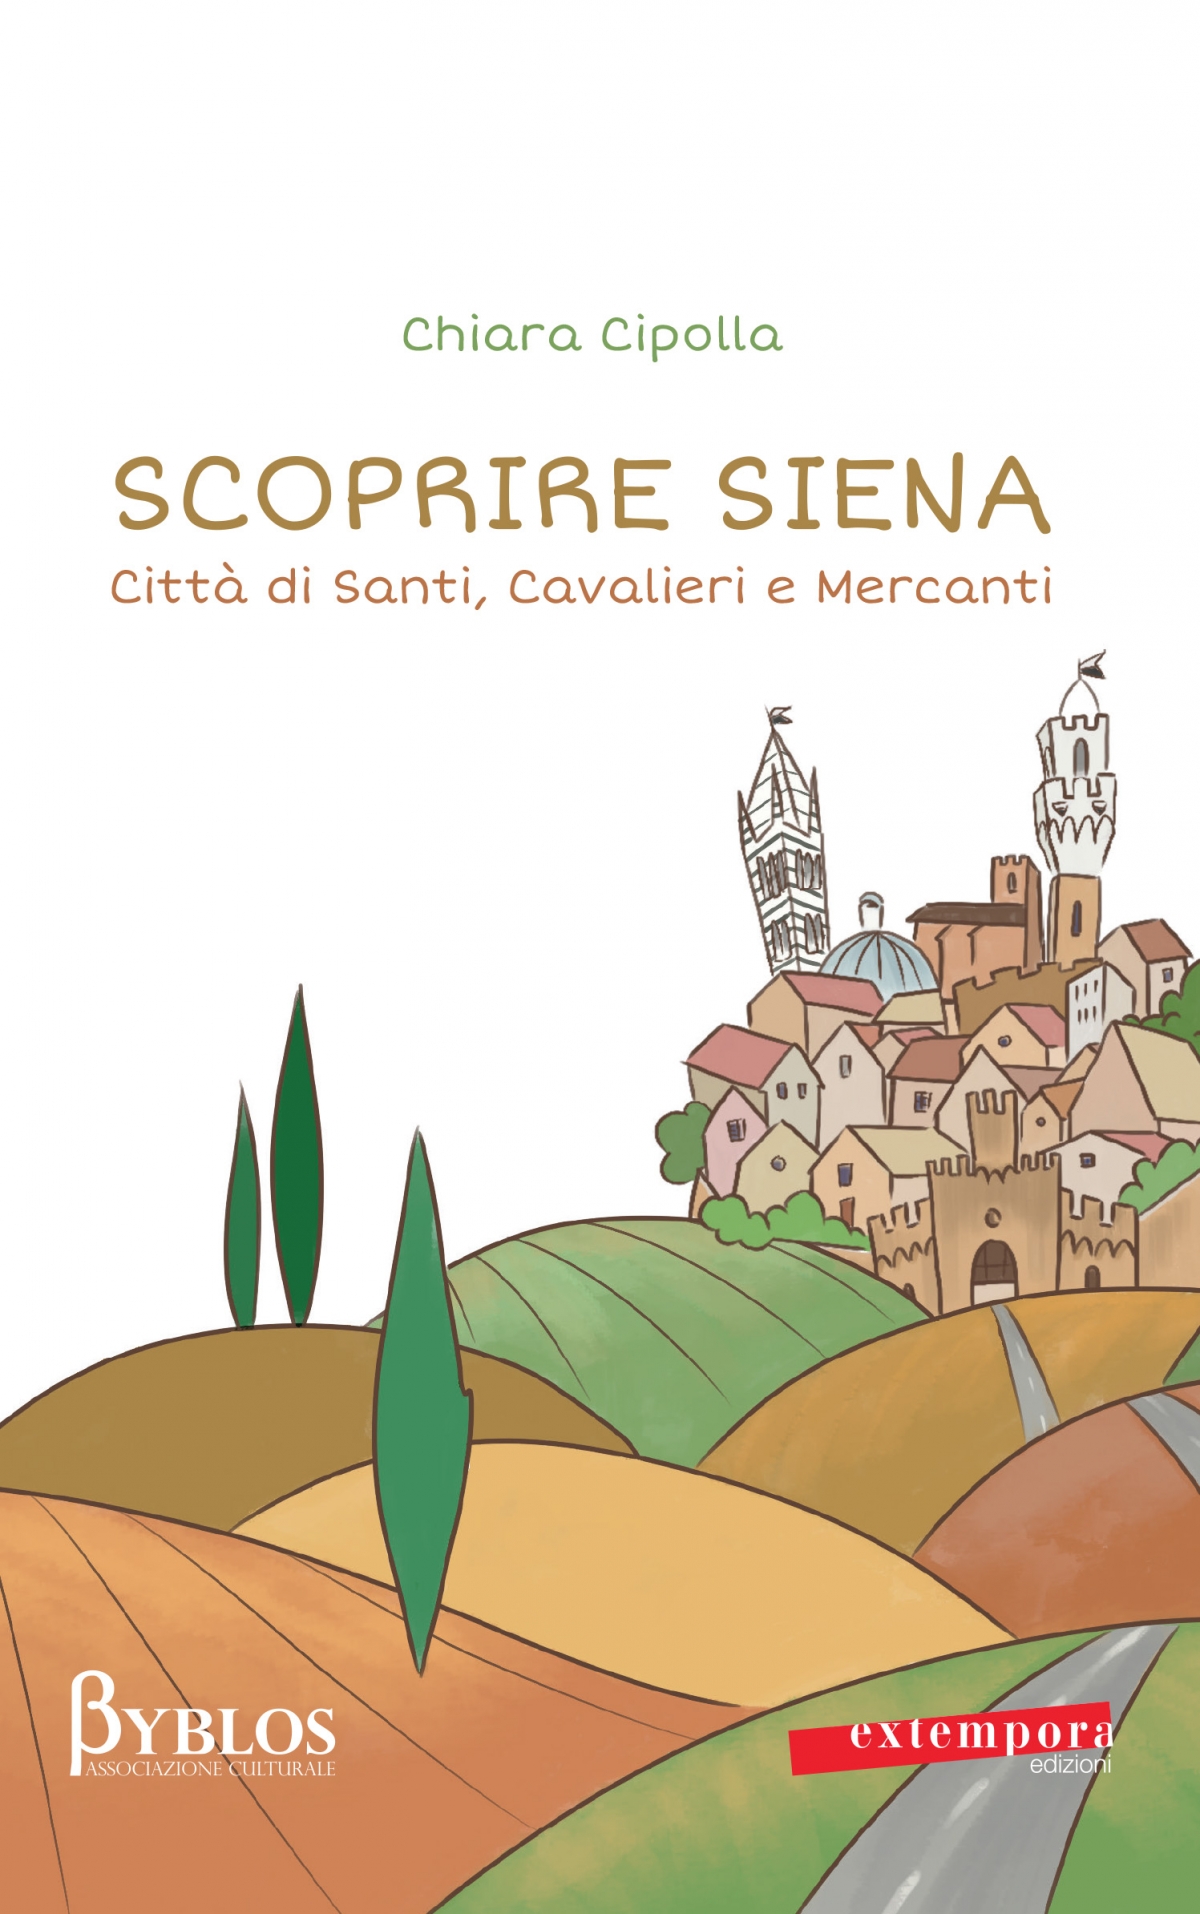 Scoprire Siena, città di santi, cavalieri e mercanti